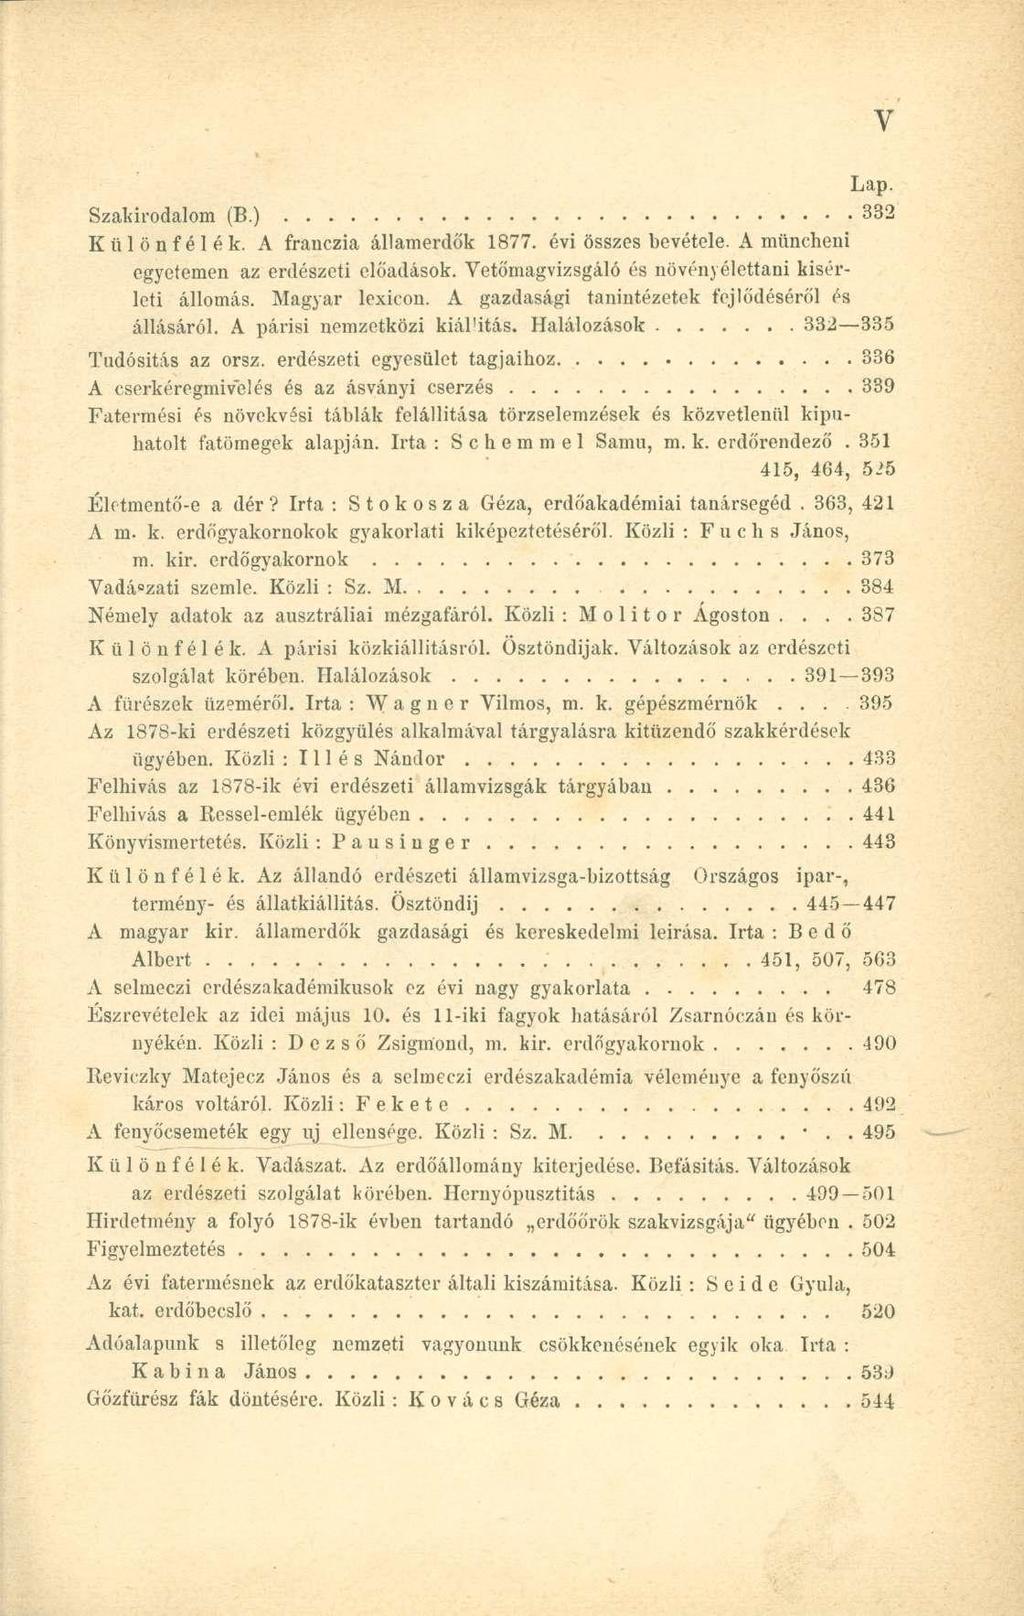 Szakirodalom (B.) 332 Különfélék. A franczia államerdők 1877. évi összes bevétele. A müncheni egyetemen az erdészeti előadások. Vetőmagvizsgáló és növényélettani kísérleti állomás. Magyar lexicon.